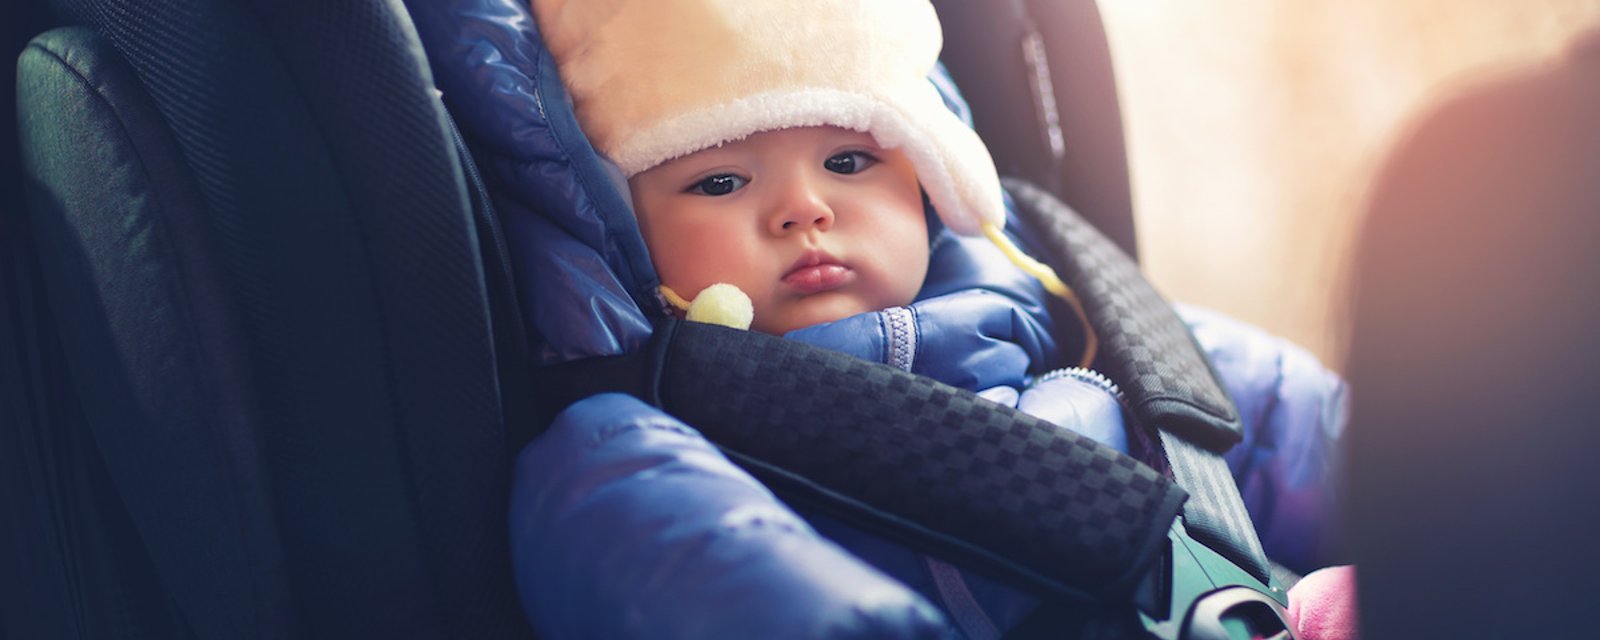 Peut-on laisser son manteau d’hiver à un enfant dans son siège d’auto, ou pas?